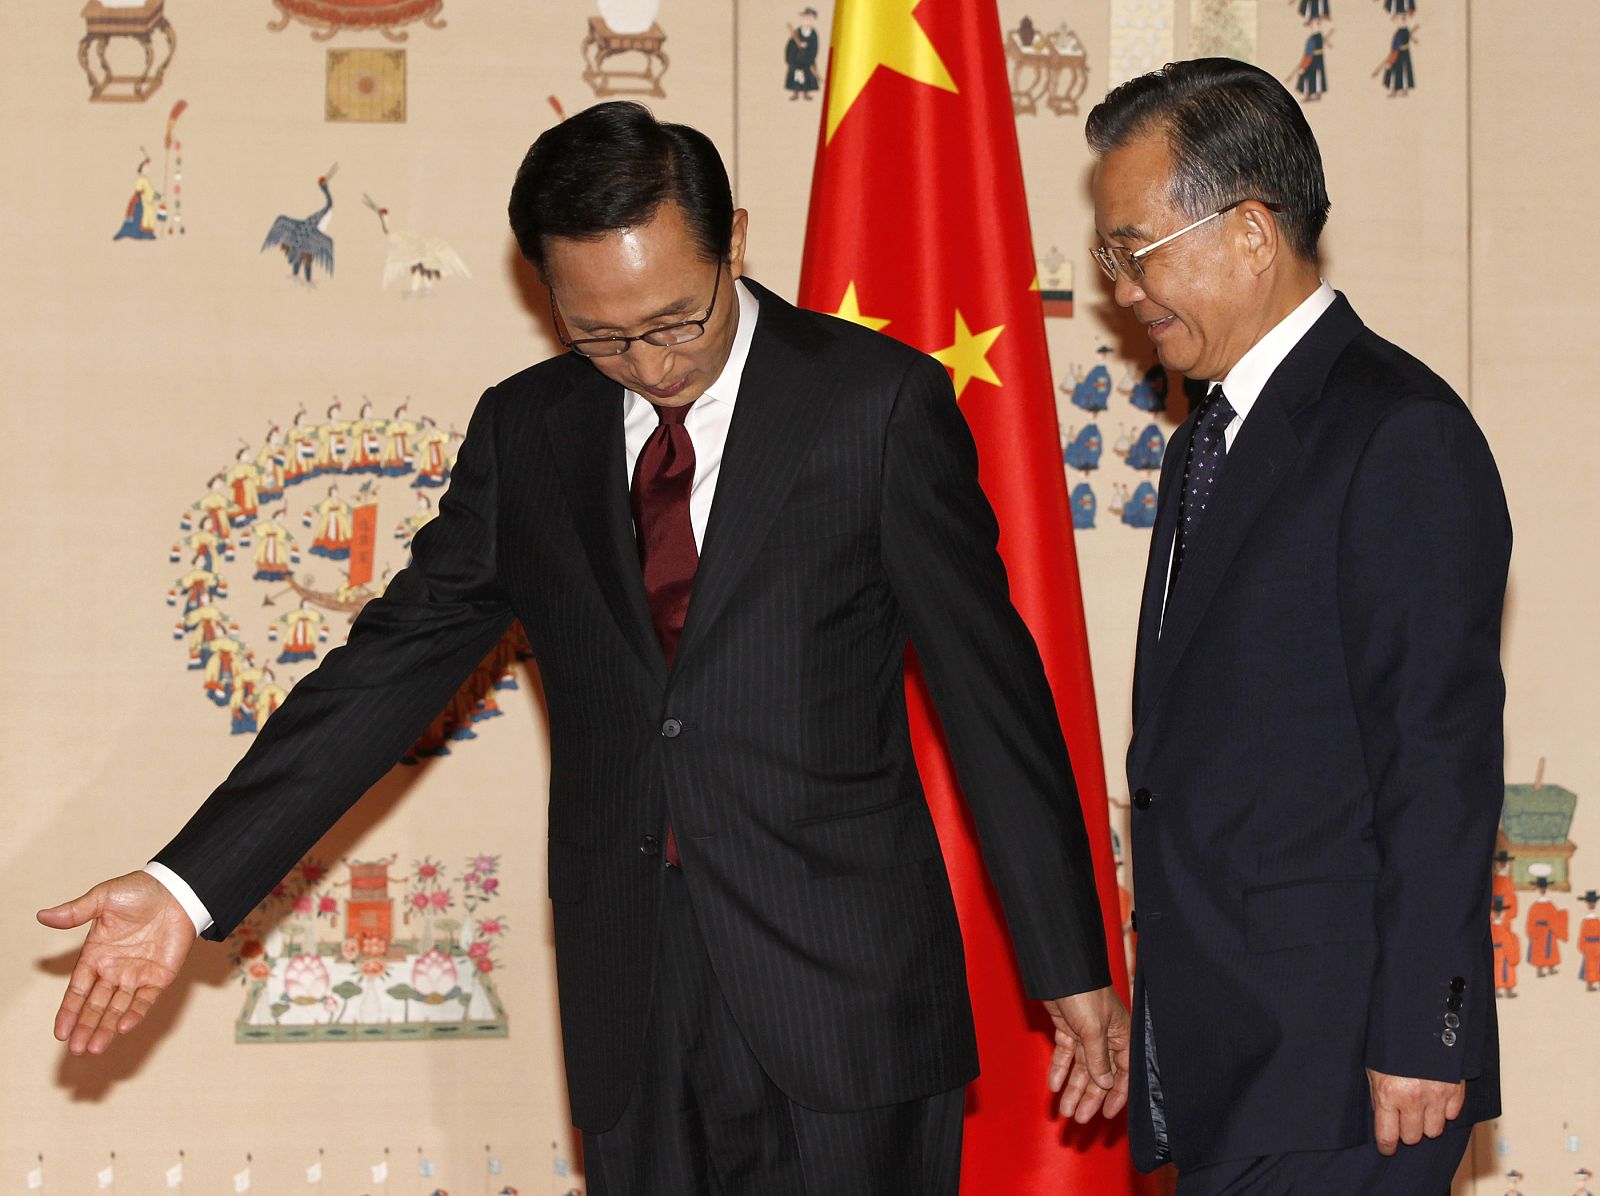 El presidente surcoreano guía al primer ministro chinoi mientras posan para los fotógrafos.